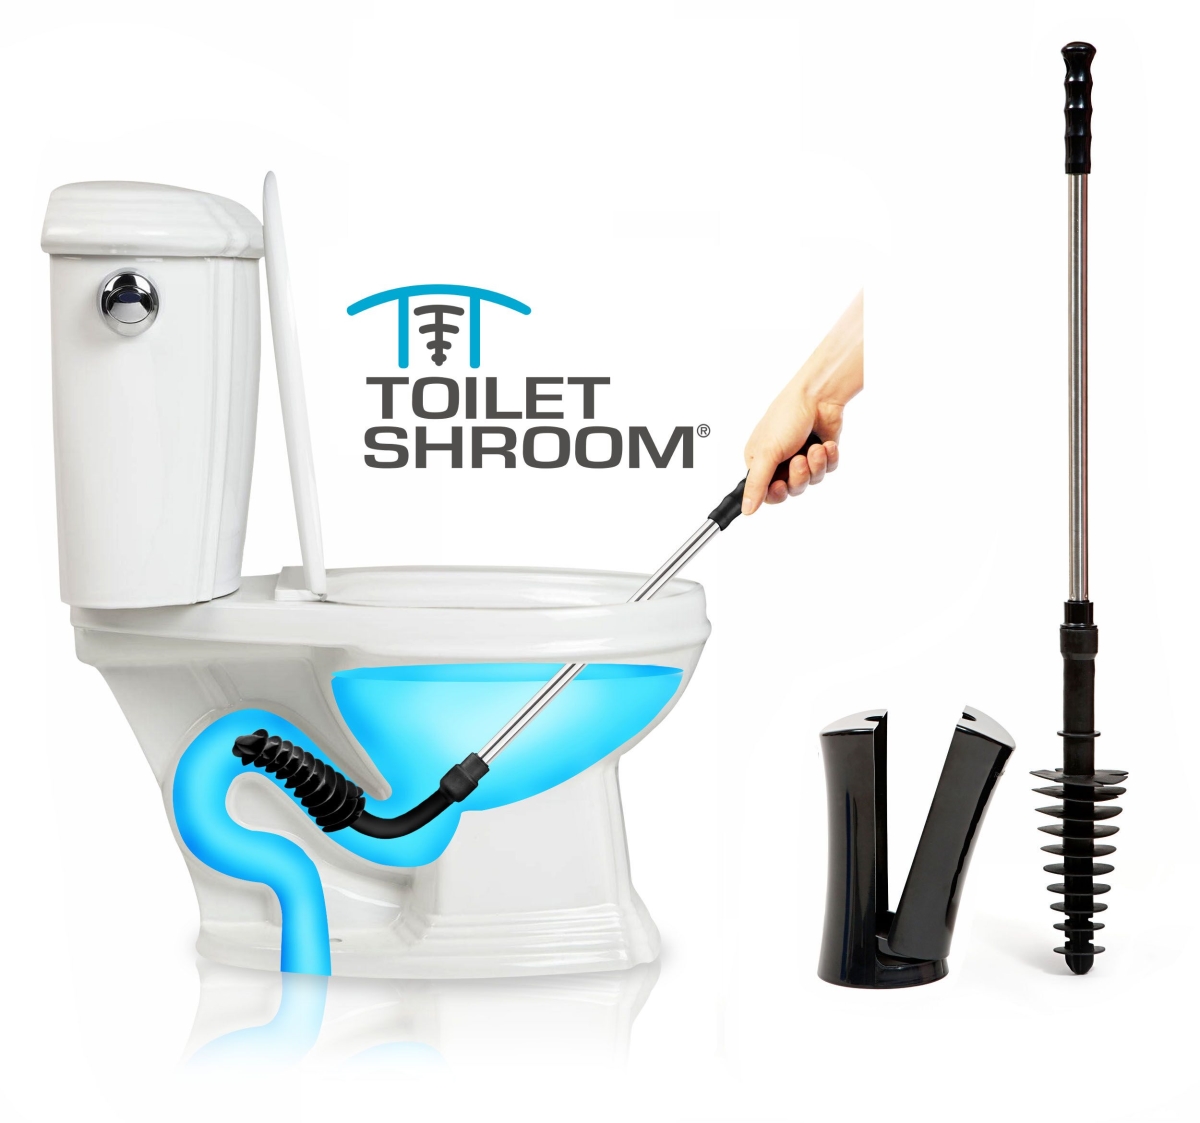 Toilshb101 Toilet Plunger Dredger - Black